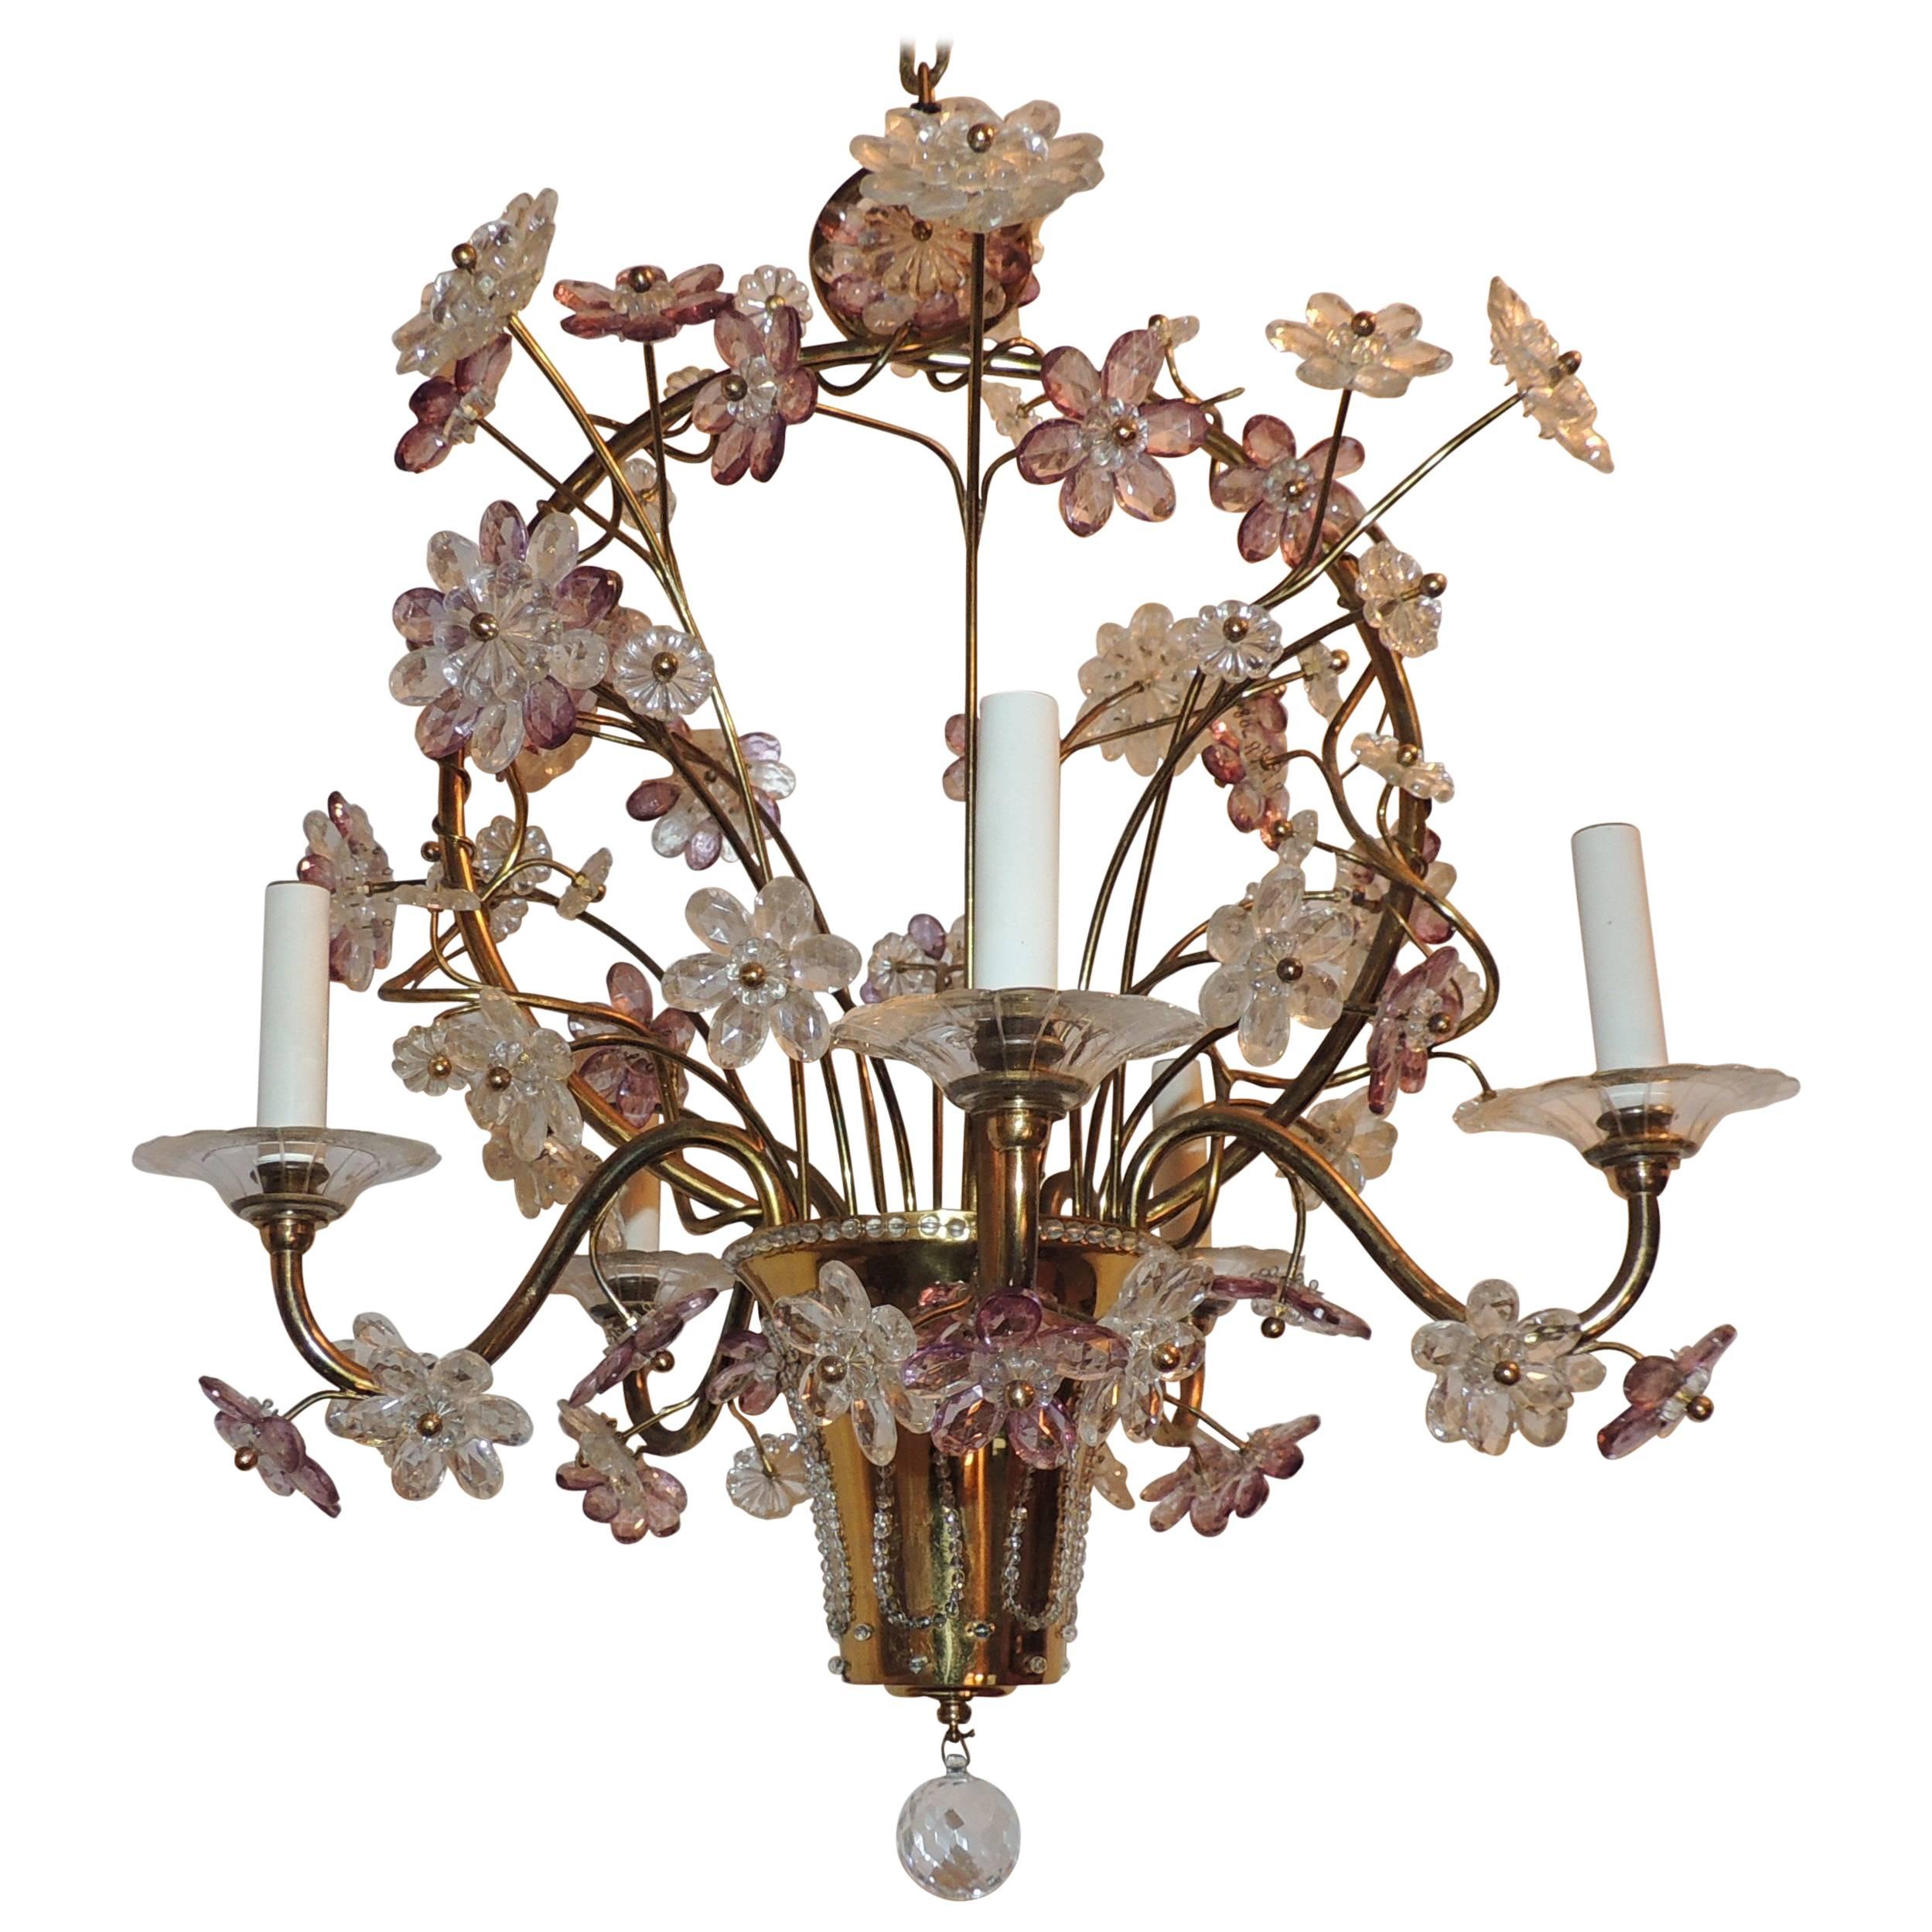 Magnifique lustre en bronze doré avec panier de perles, améthyste et fleurs en cristal